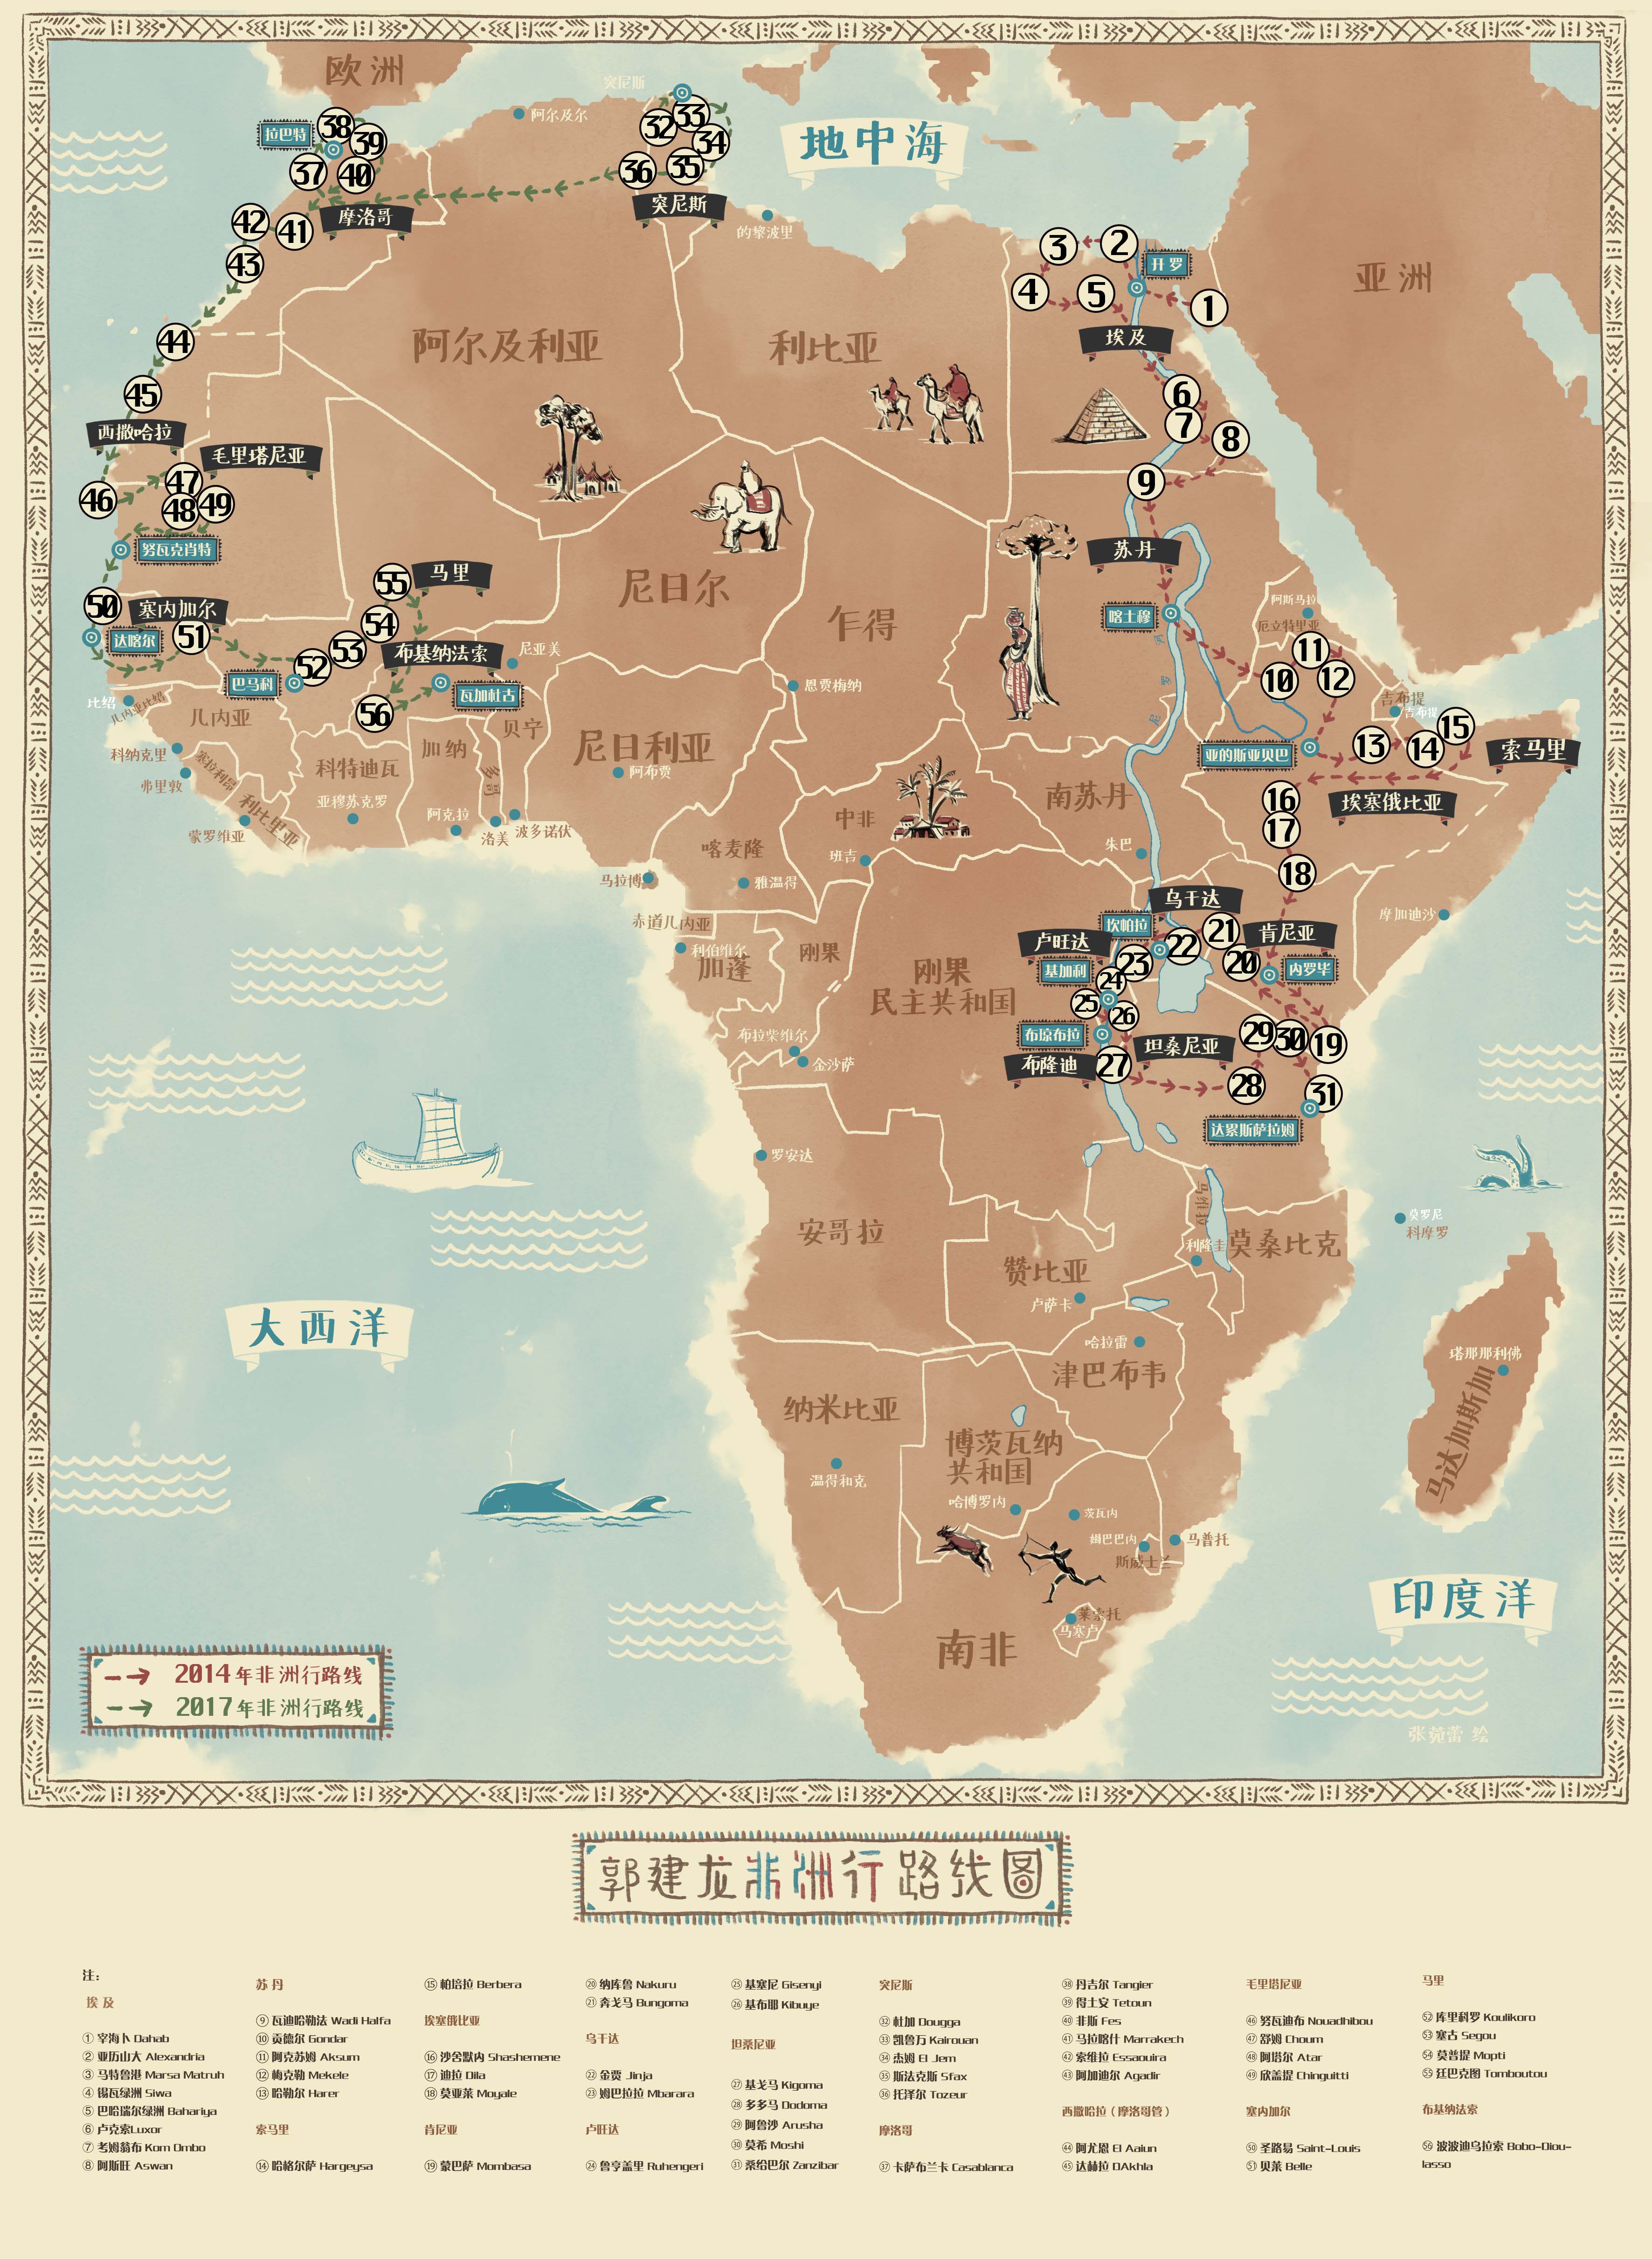 游历17个国家50多座城市,他以中国人的视角深度观察非洲图片